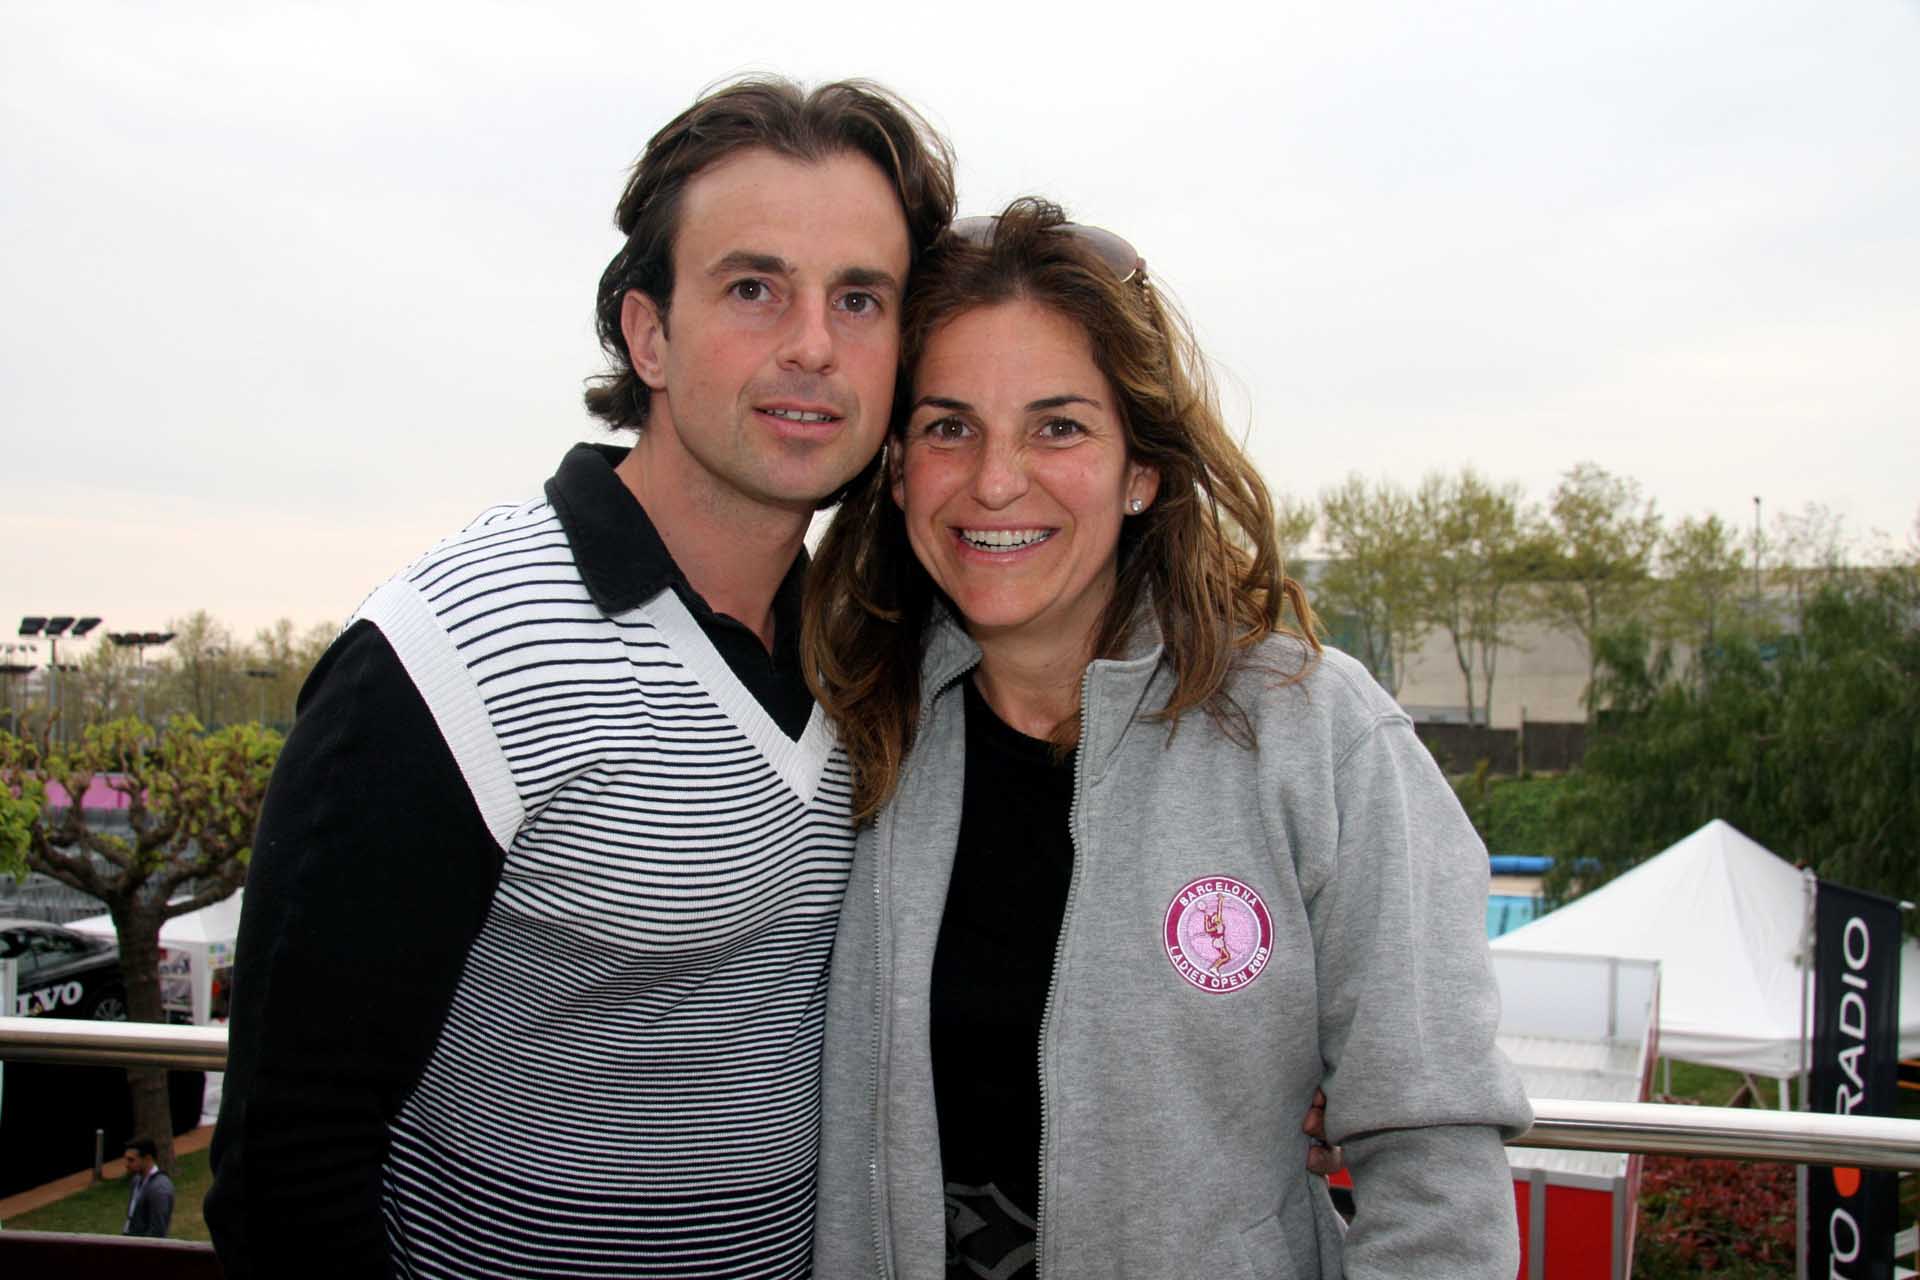 Arantxa Sánchez Vicario y Josep Santacana protagonizaron enfrentamientos con la familia de la tenista cuando estaban juntos